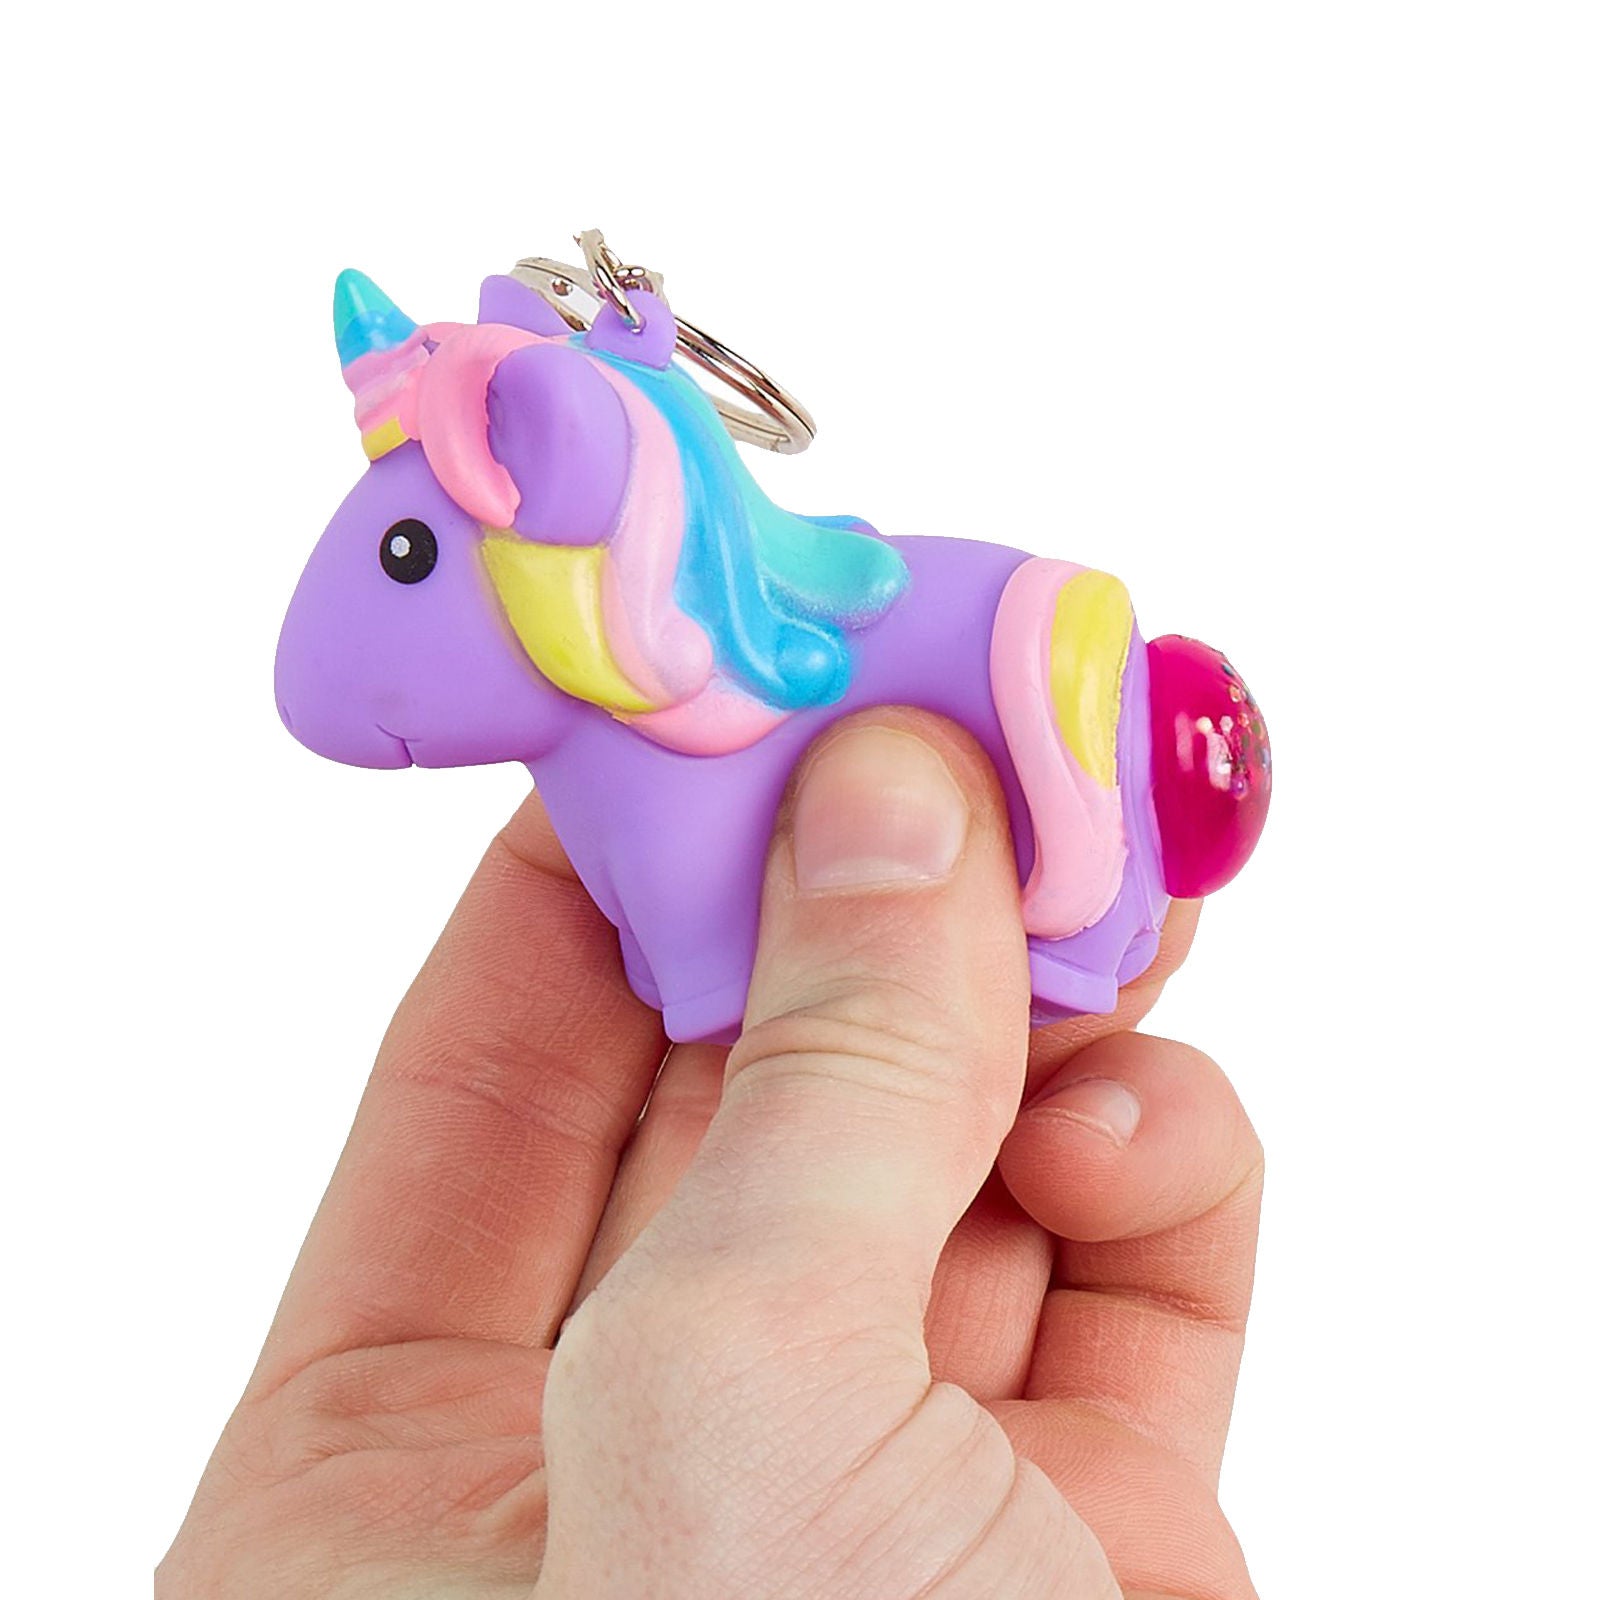 Poo Poo Unicorn Keychain